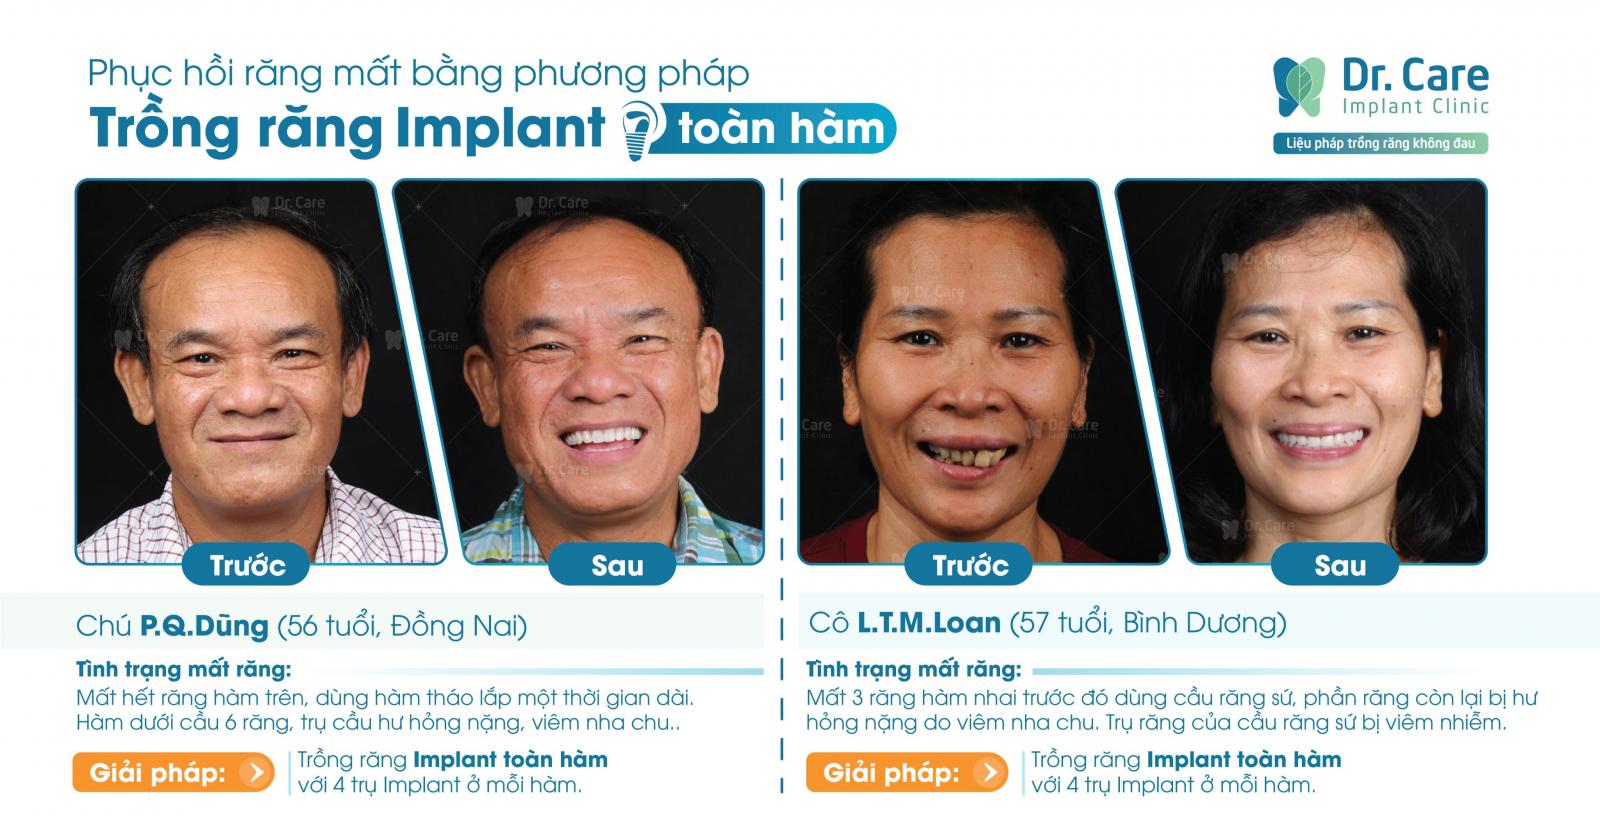 Dr. Care - Implant Clinic đa dạng các loại hình dịch vụ 